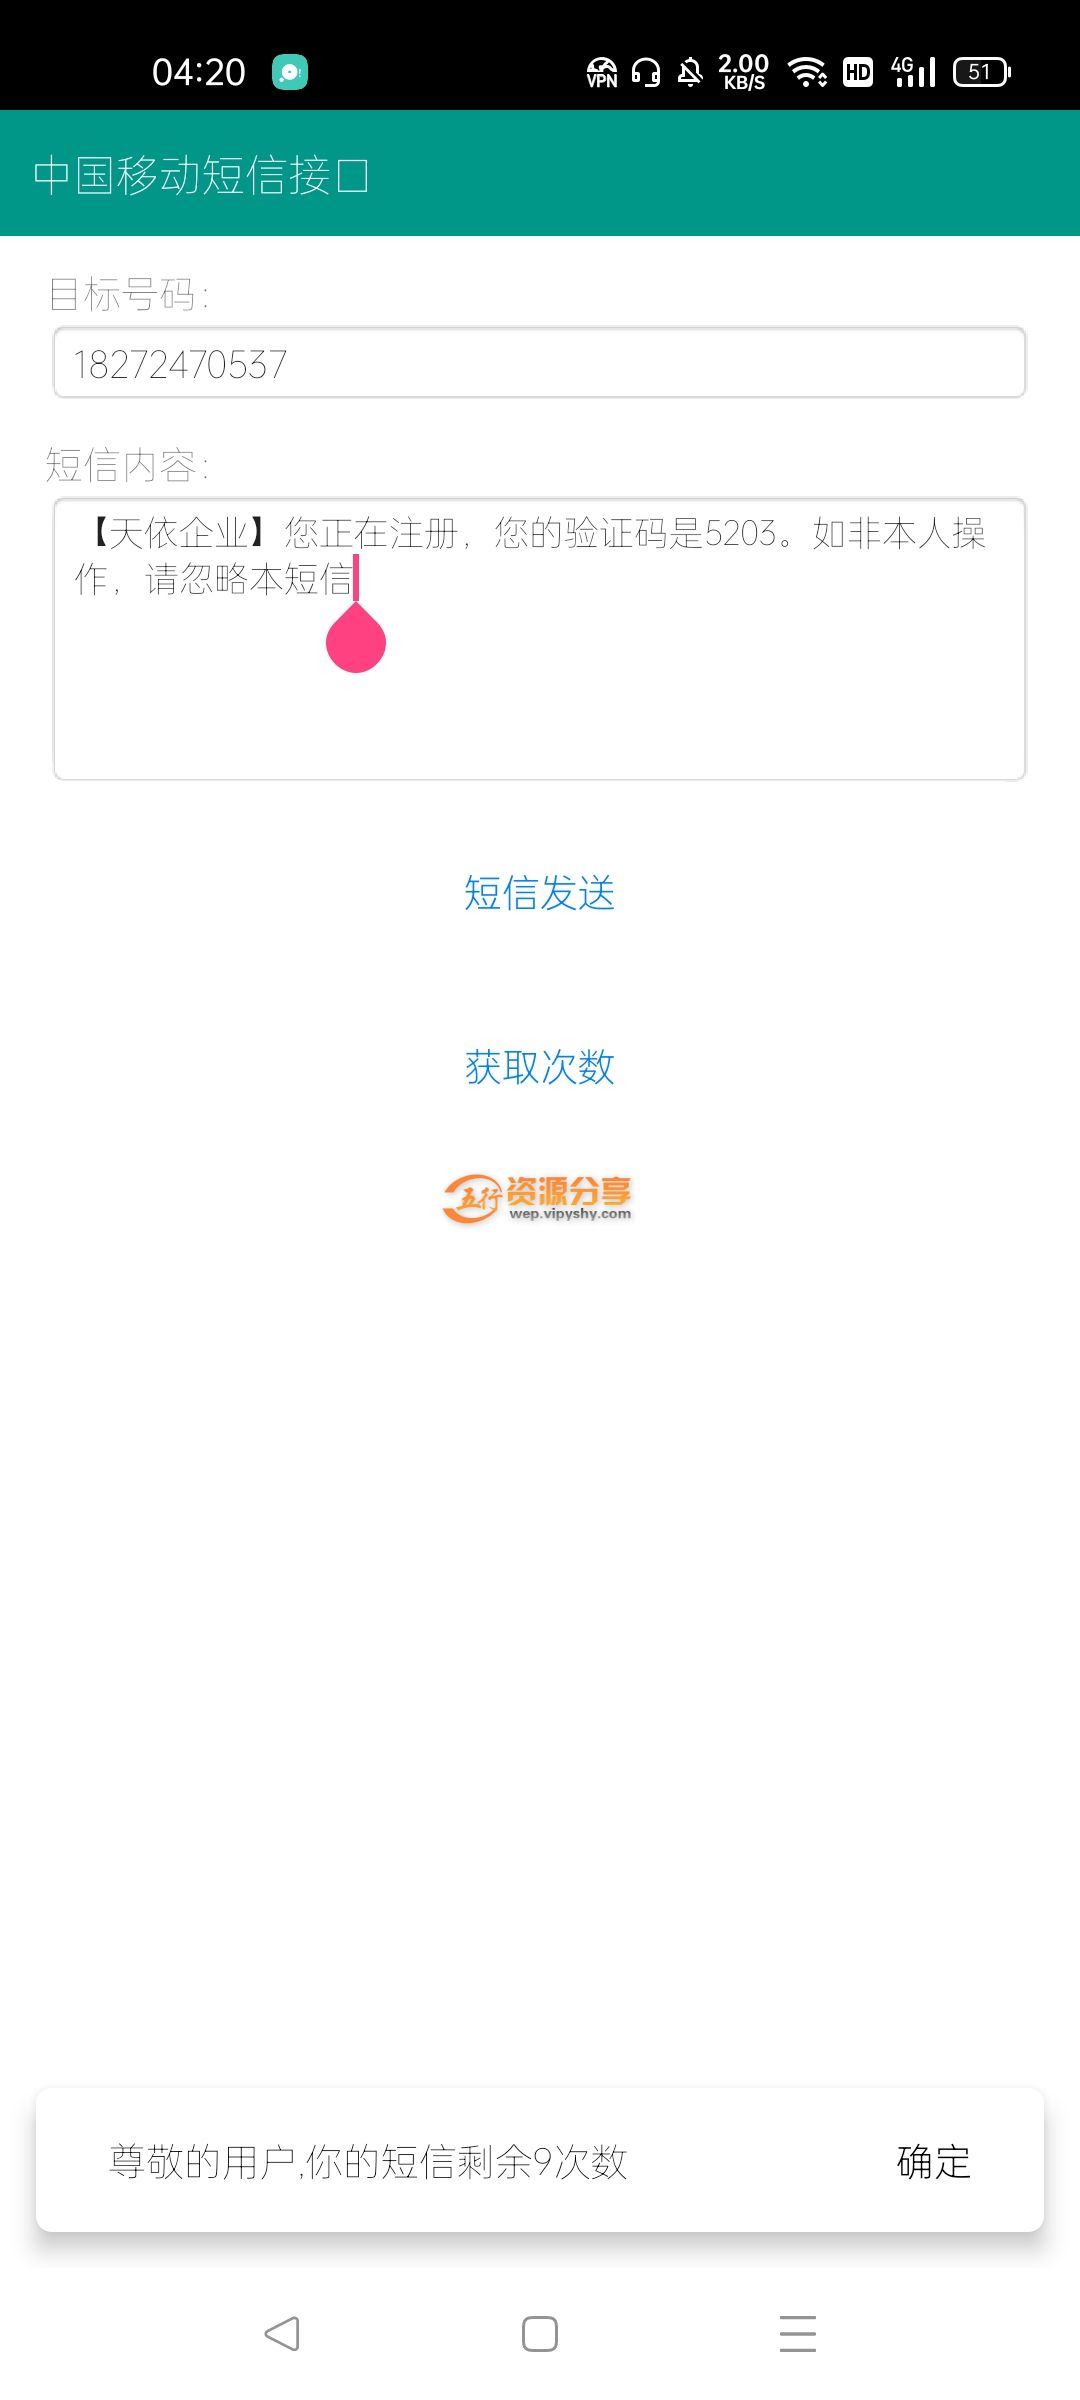 【原创 IAPP源码】中国移动短信接口-图片